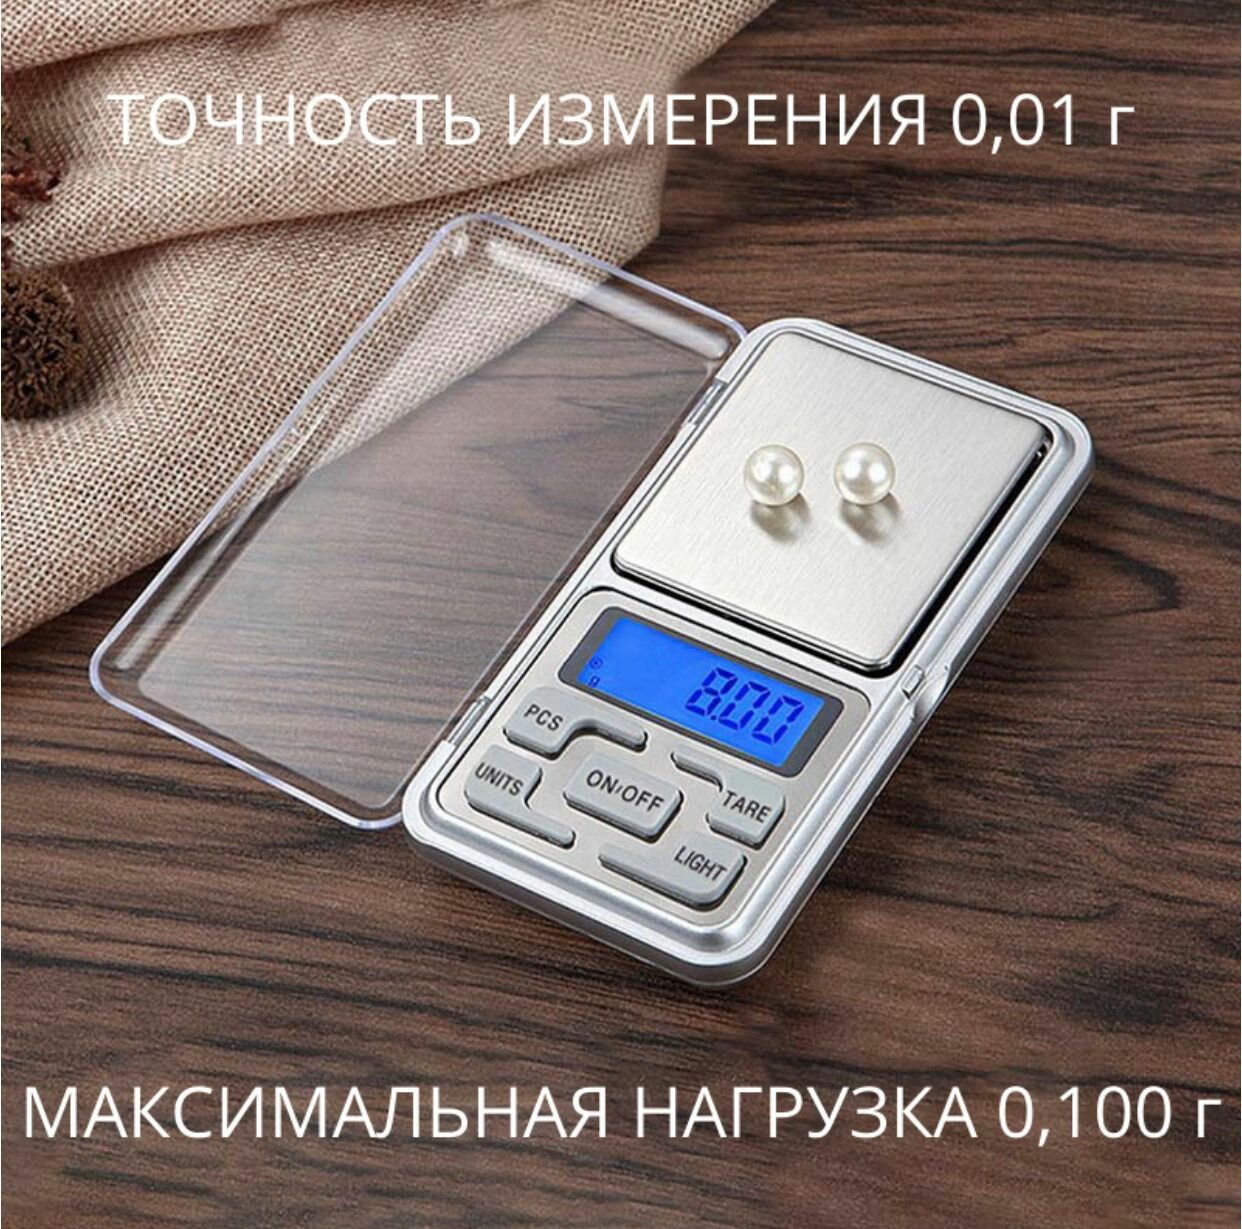 Весы ювелирные / Электронные карманные/ 100 гр./0.1 гр./ В комплекте батарейки.